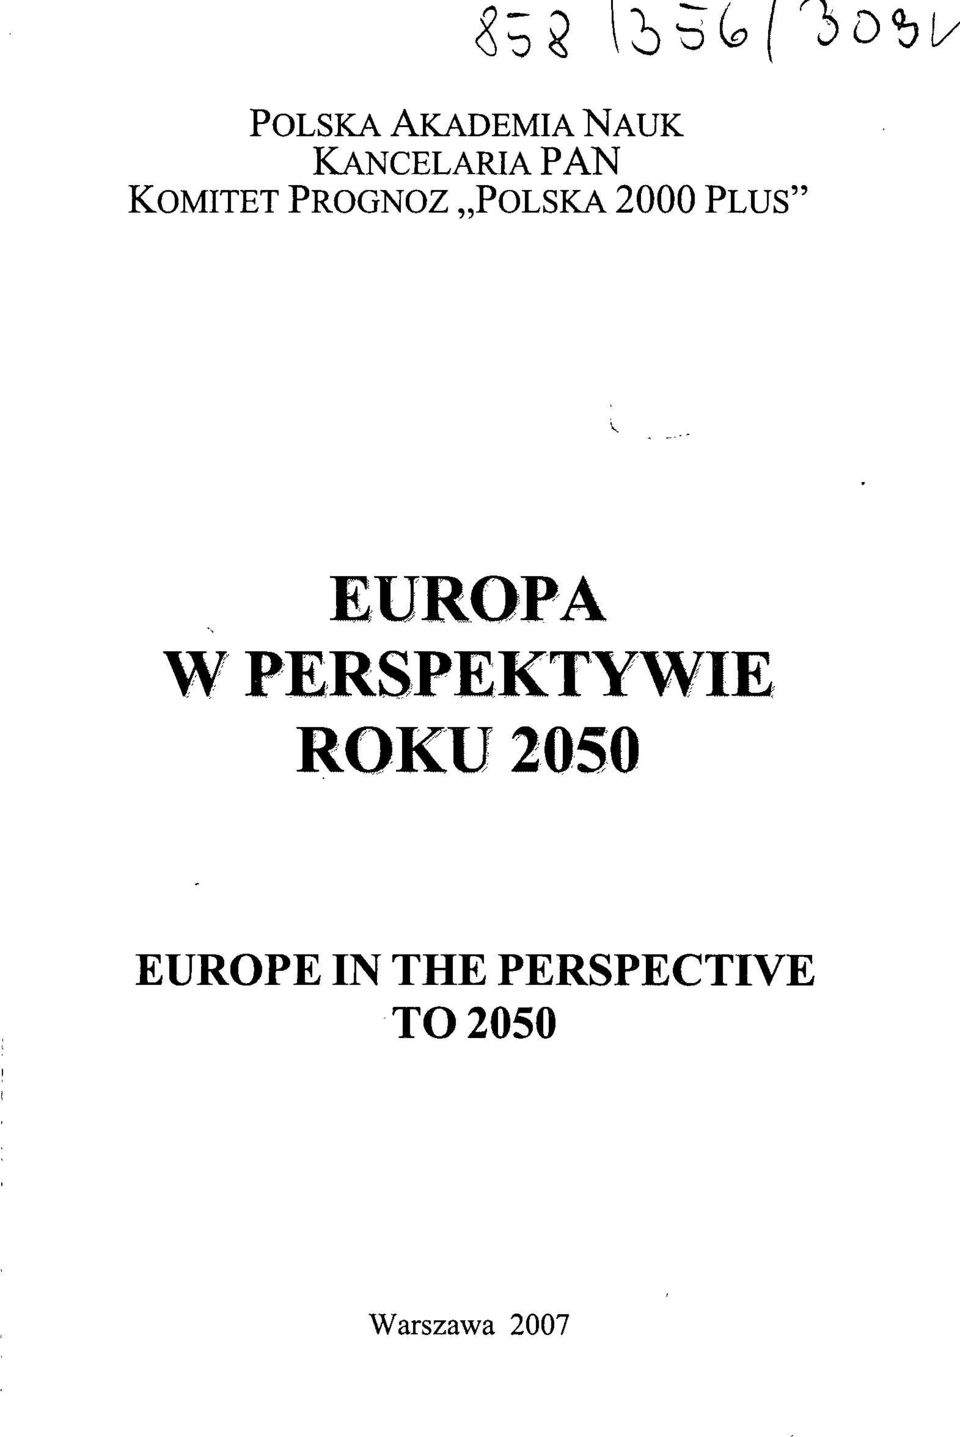 EUROPA W PERSPEKTYWIE ROKU 2050